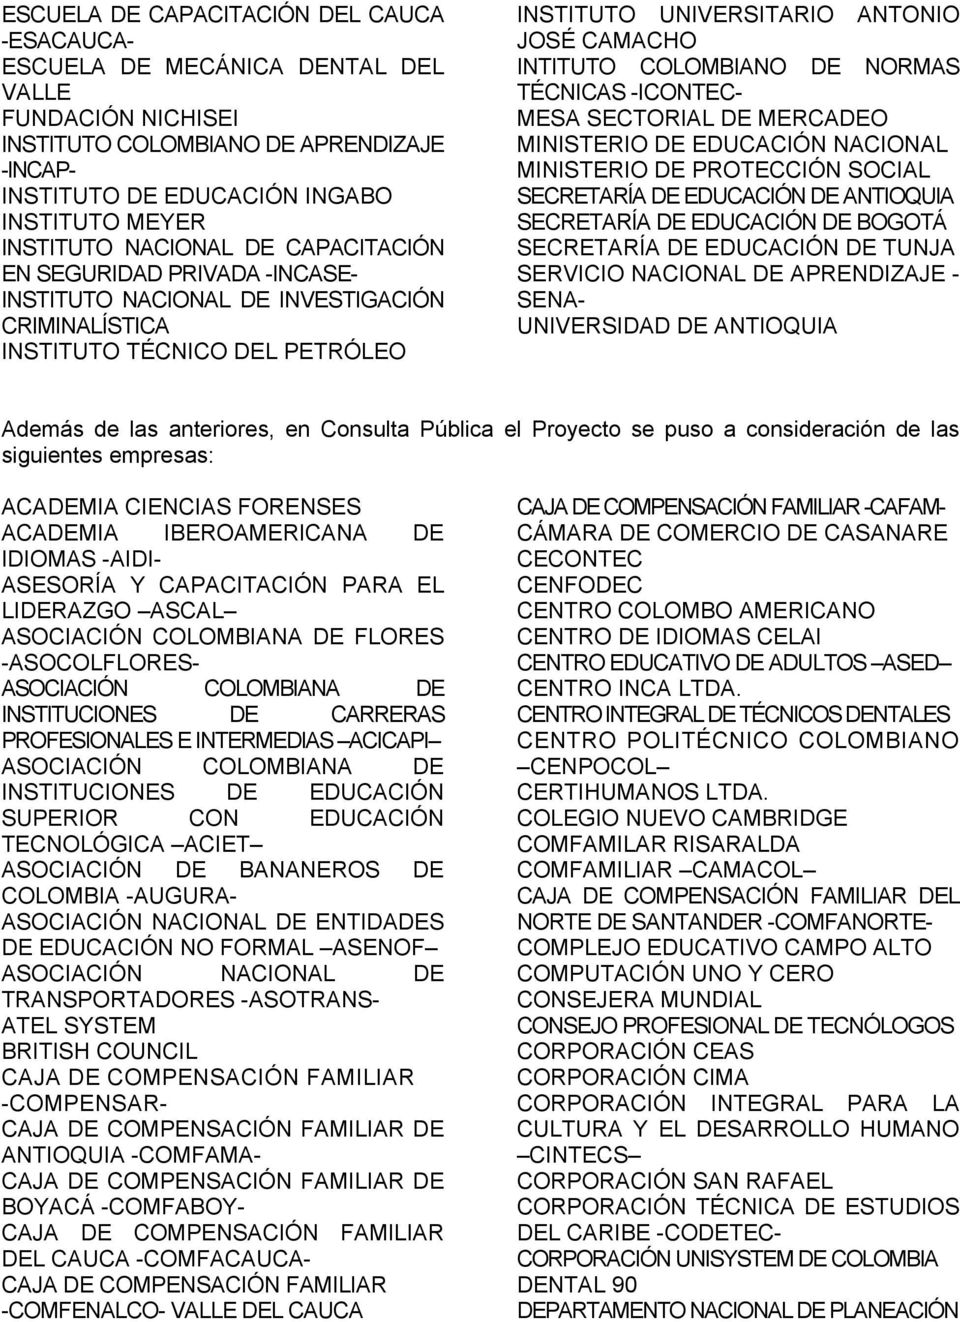 INTITUTO COLOMBIANO DE NORMAS TÉCNICAS -ICONTEC- MESA SECTORIAL DE MERCADEO MINISTERIO DE EDUCACIÓN NACIONAL MINISTERIO DE PROTECCIÓN SOCIAL SECRETARÍA DE EDUCACIÓN DE ANTIOQUIA SECRETARÍA DE